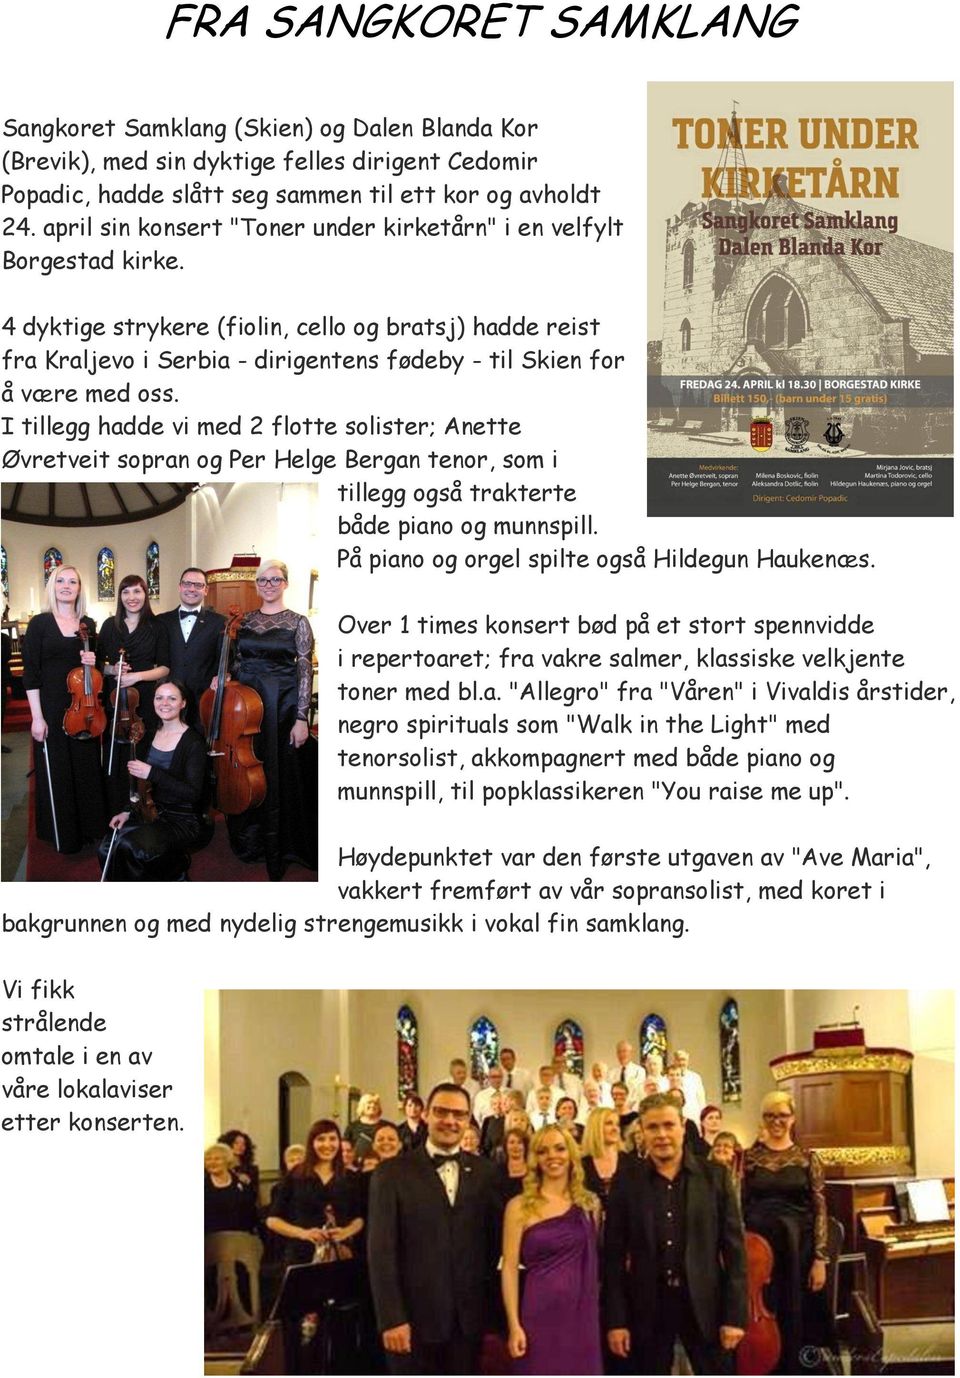 4 dyktige strykere (fiolin, cello og bratsj) hadde reist fra Kraljevo i Serbia - dirigentens fødeby - til Skien for å være med oss.